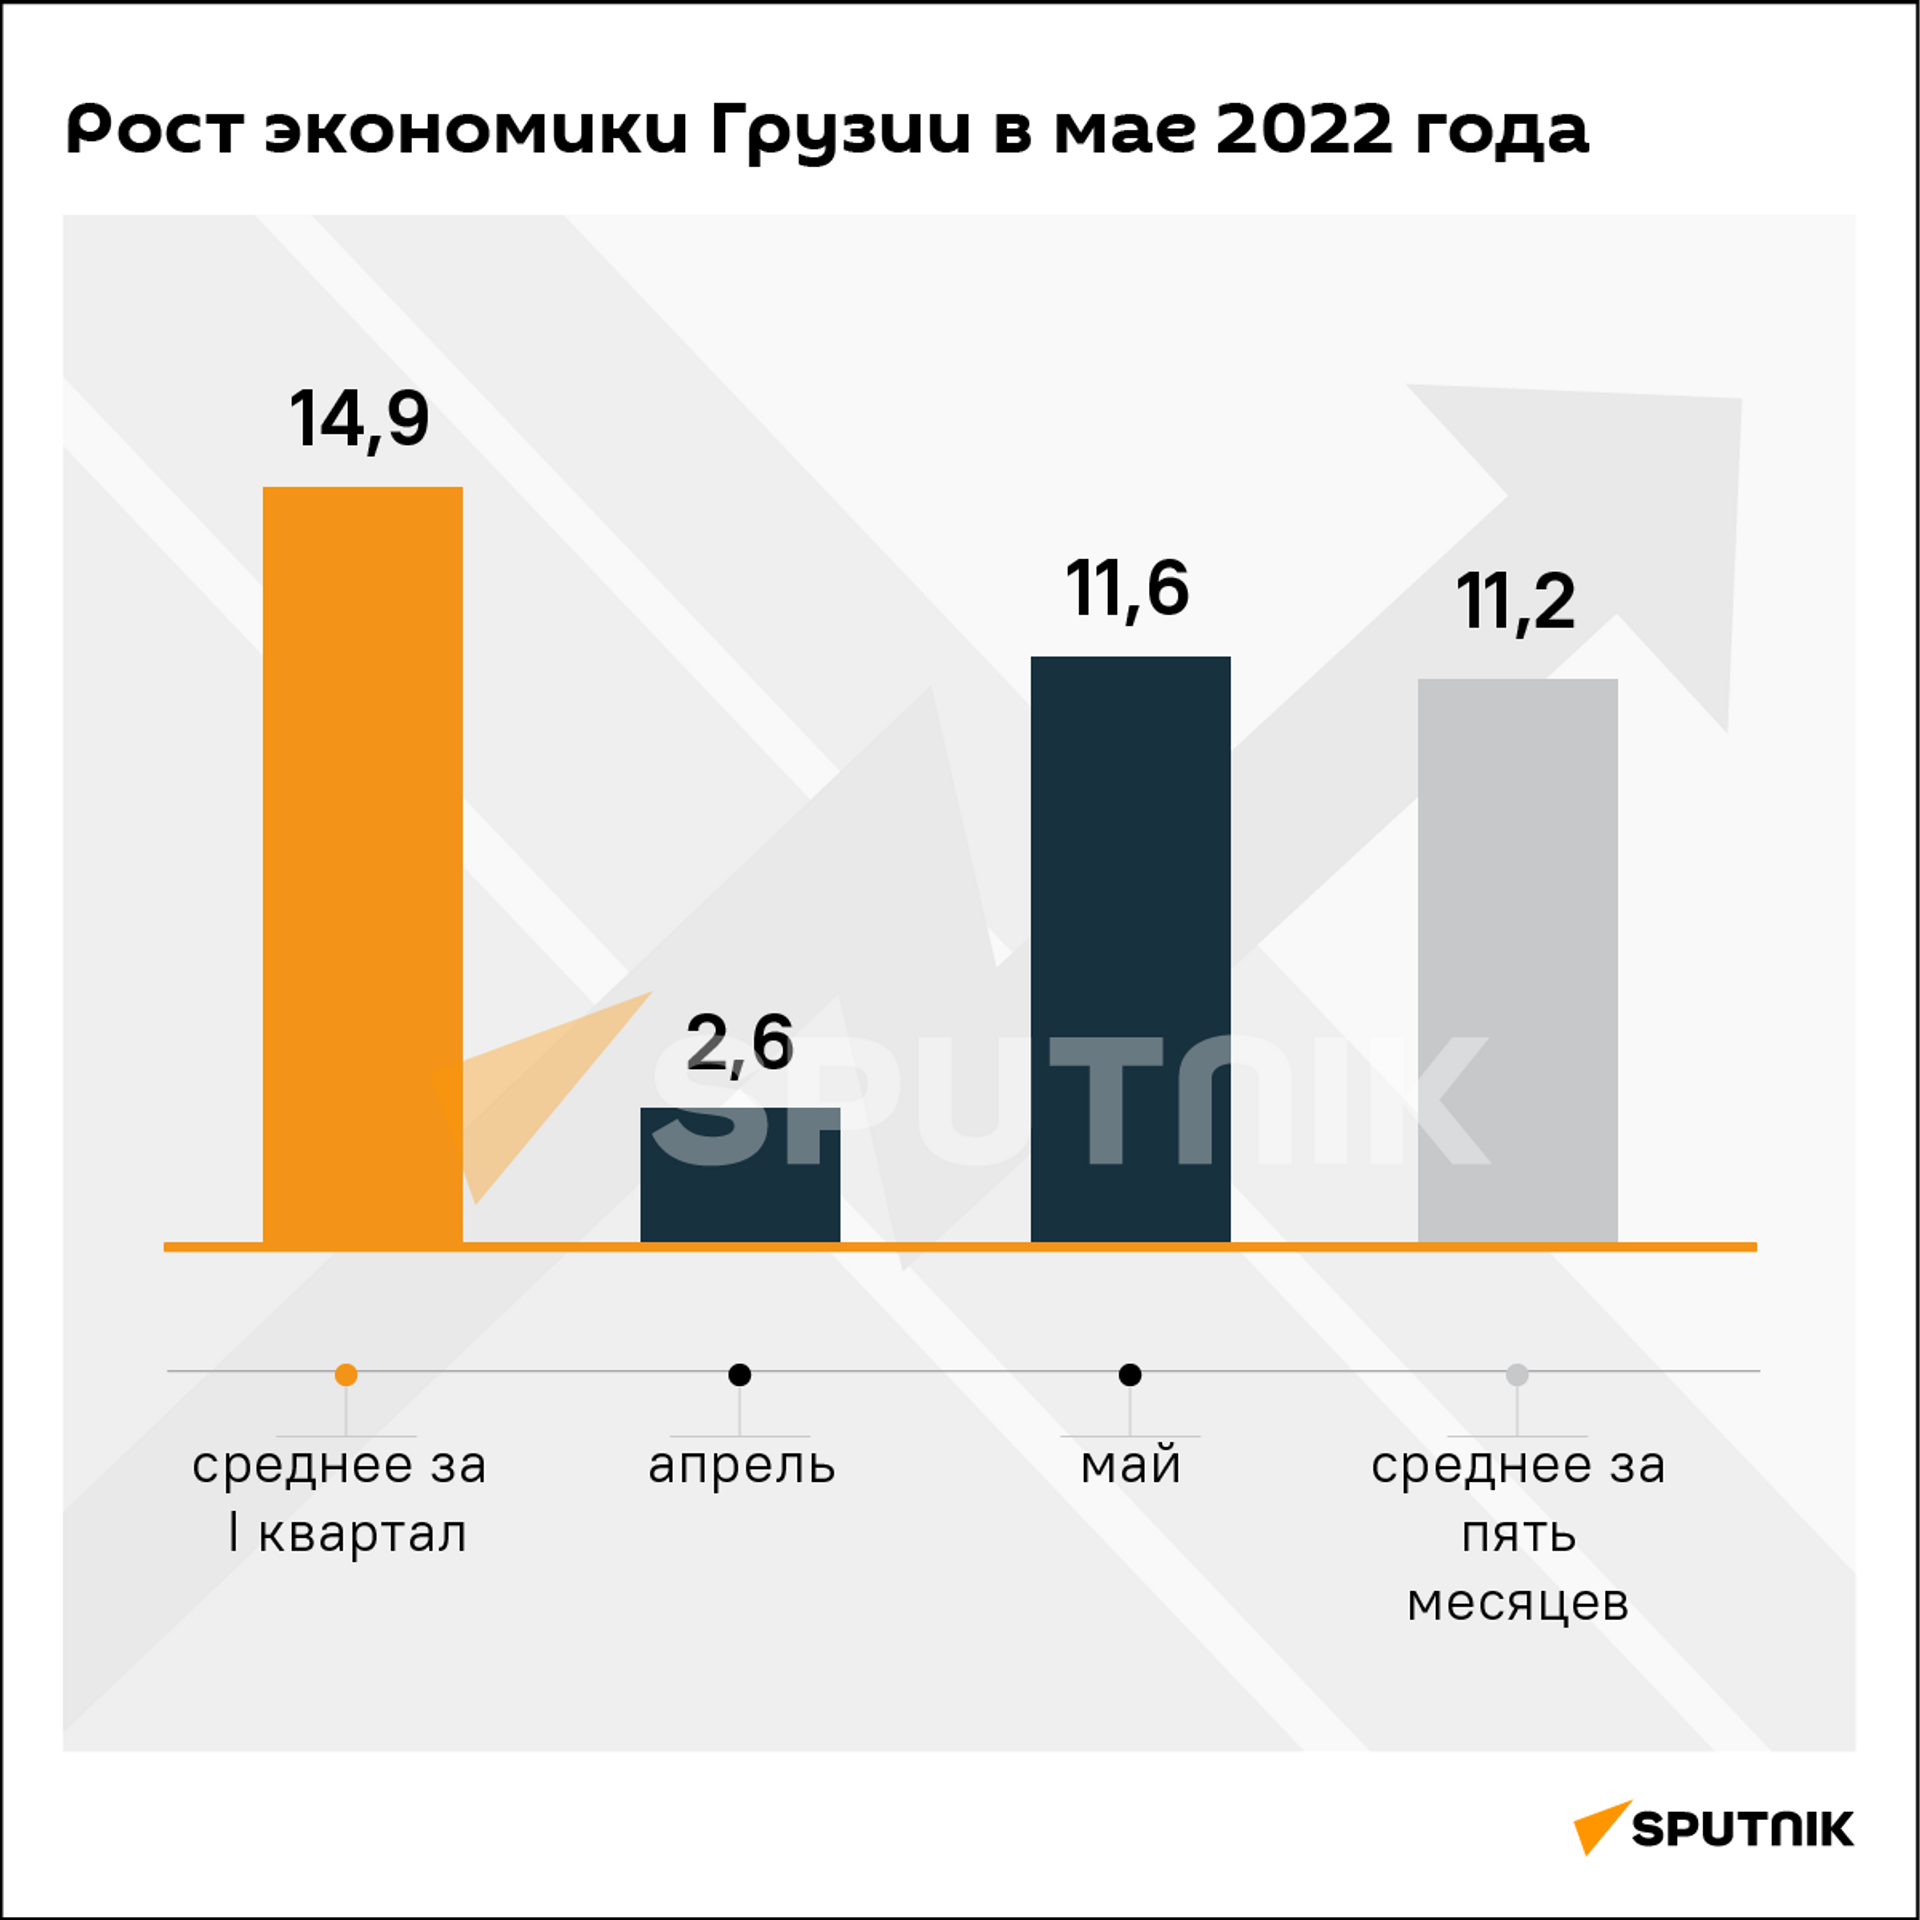 Экономический рост Грузии за май и пять месяцев 2022 года - Sputnik Грузия, 1920, 01.07.2022